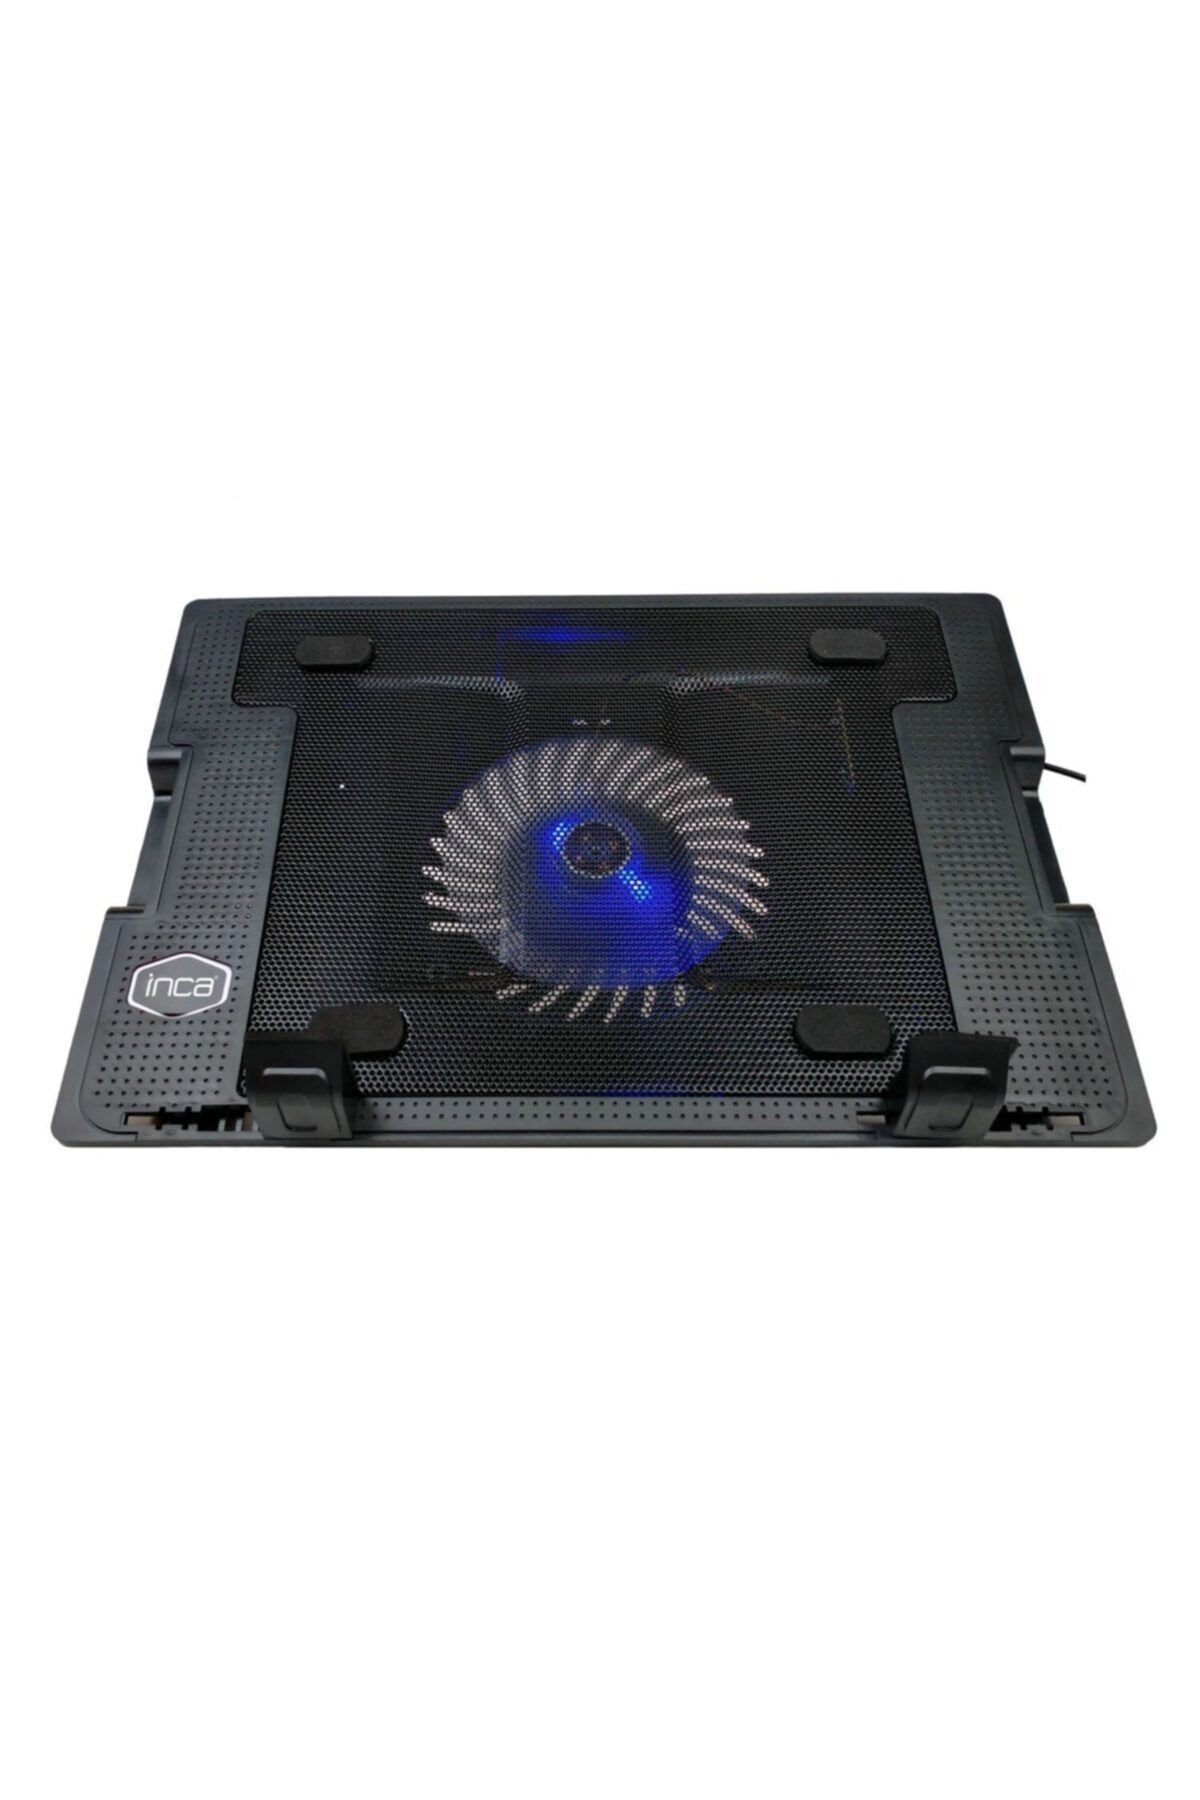 Inca Inc-343fxs Profesyonel Laptop Soğutucu - Stand Ayarlı - Ultra Sessiz Fan -